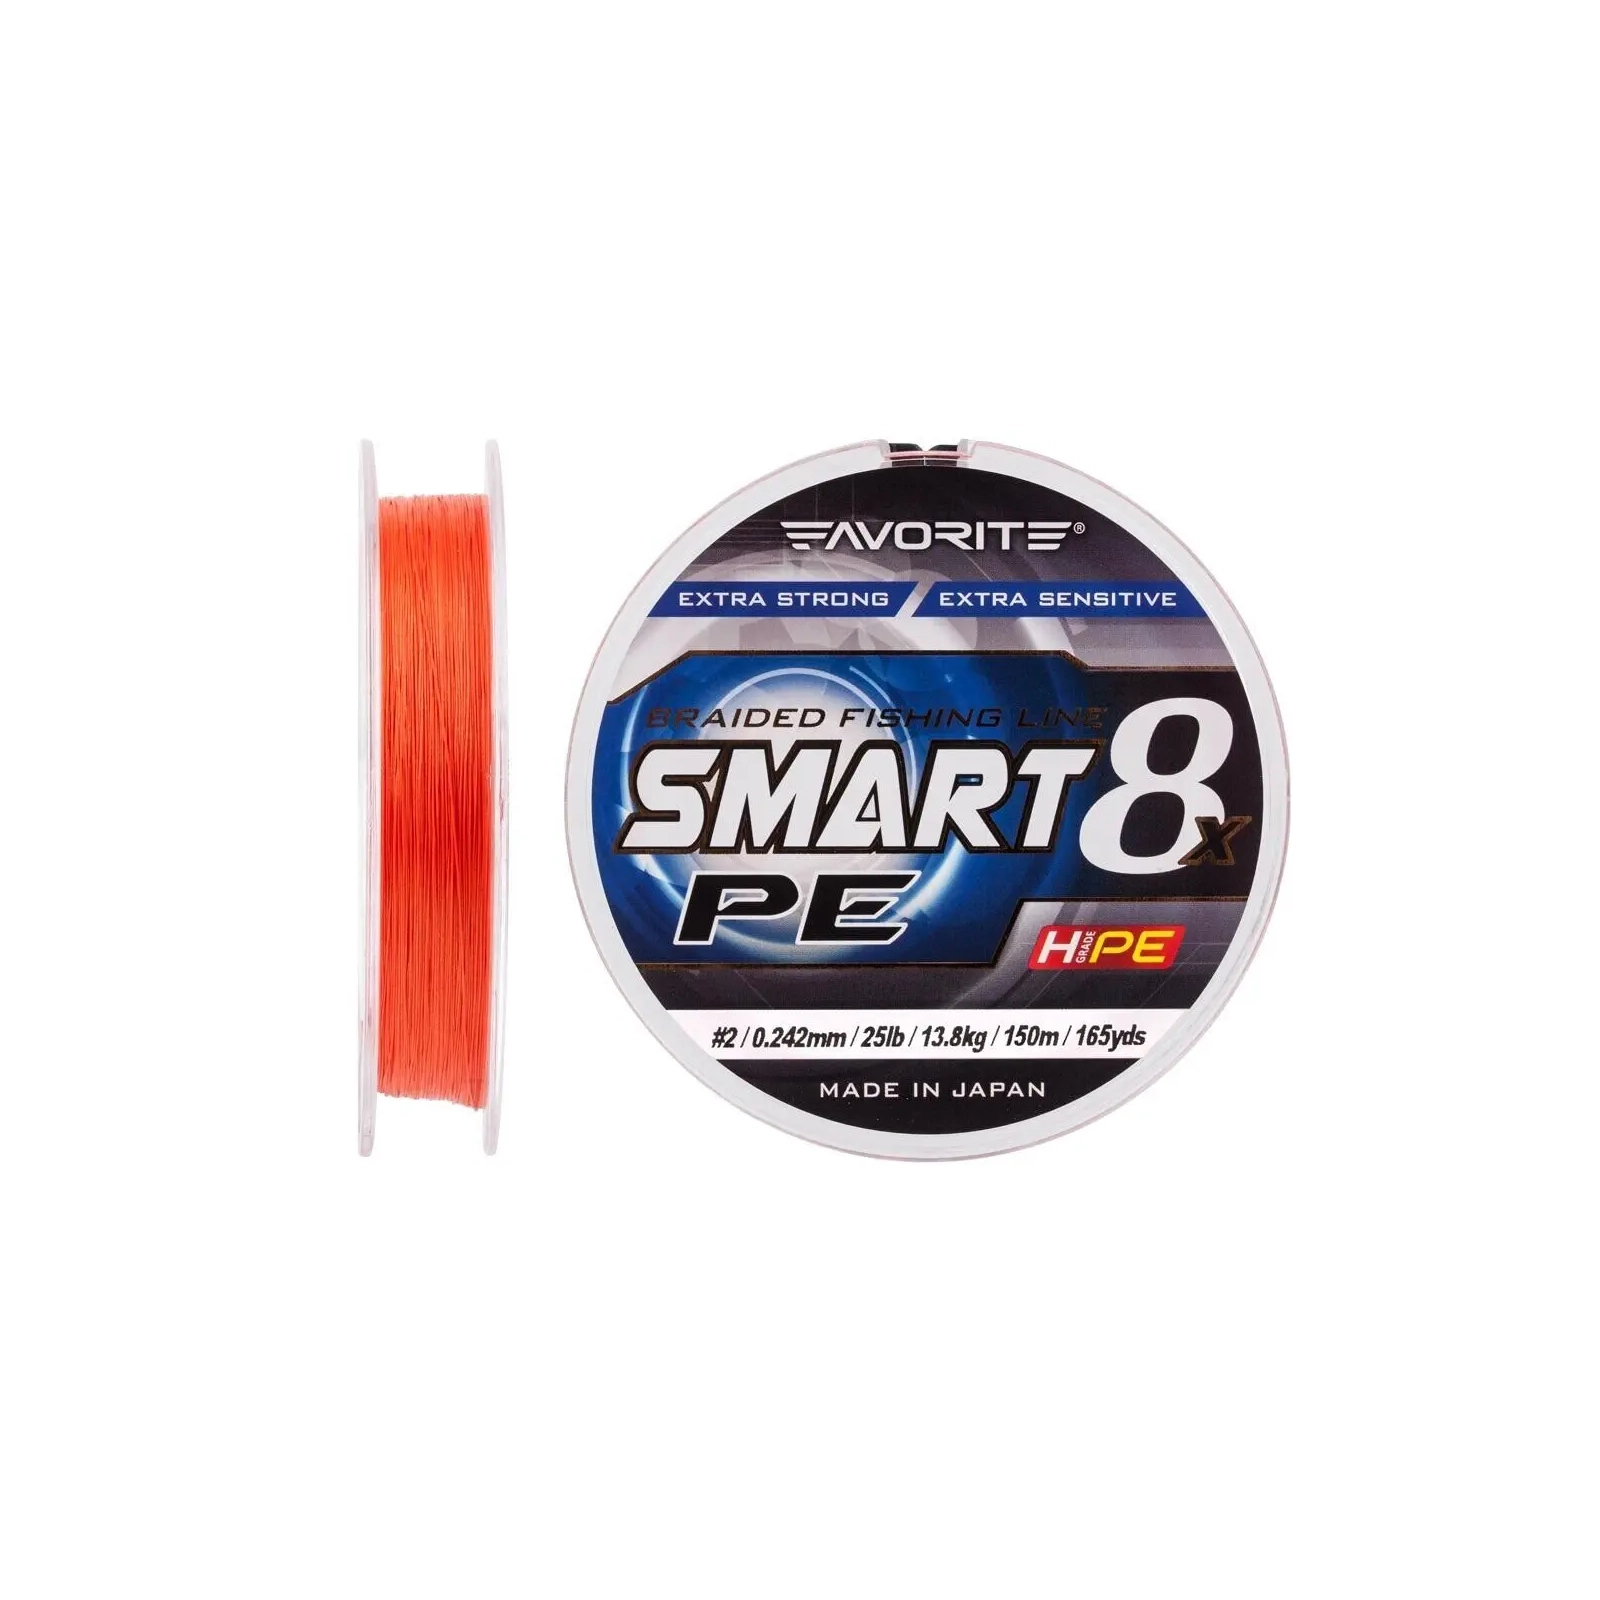 Шнур Favorite Smart PE 8x 150м 2.0/0.242mm 25lb/13.8kg Red Orange (1693.10.85) зображення 2